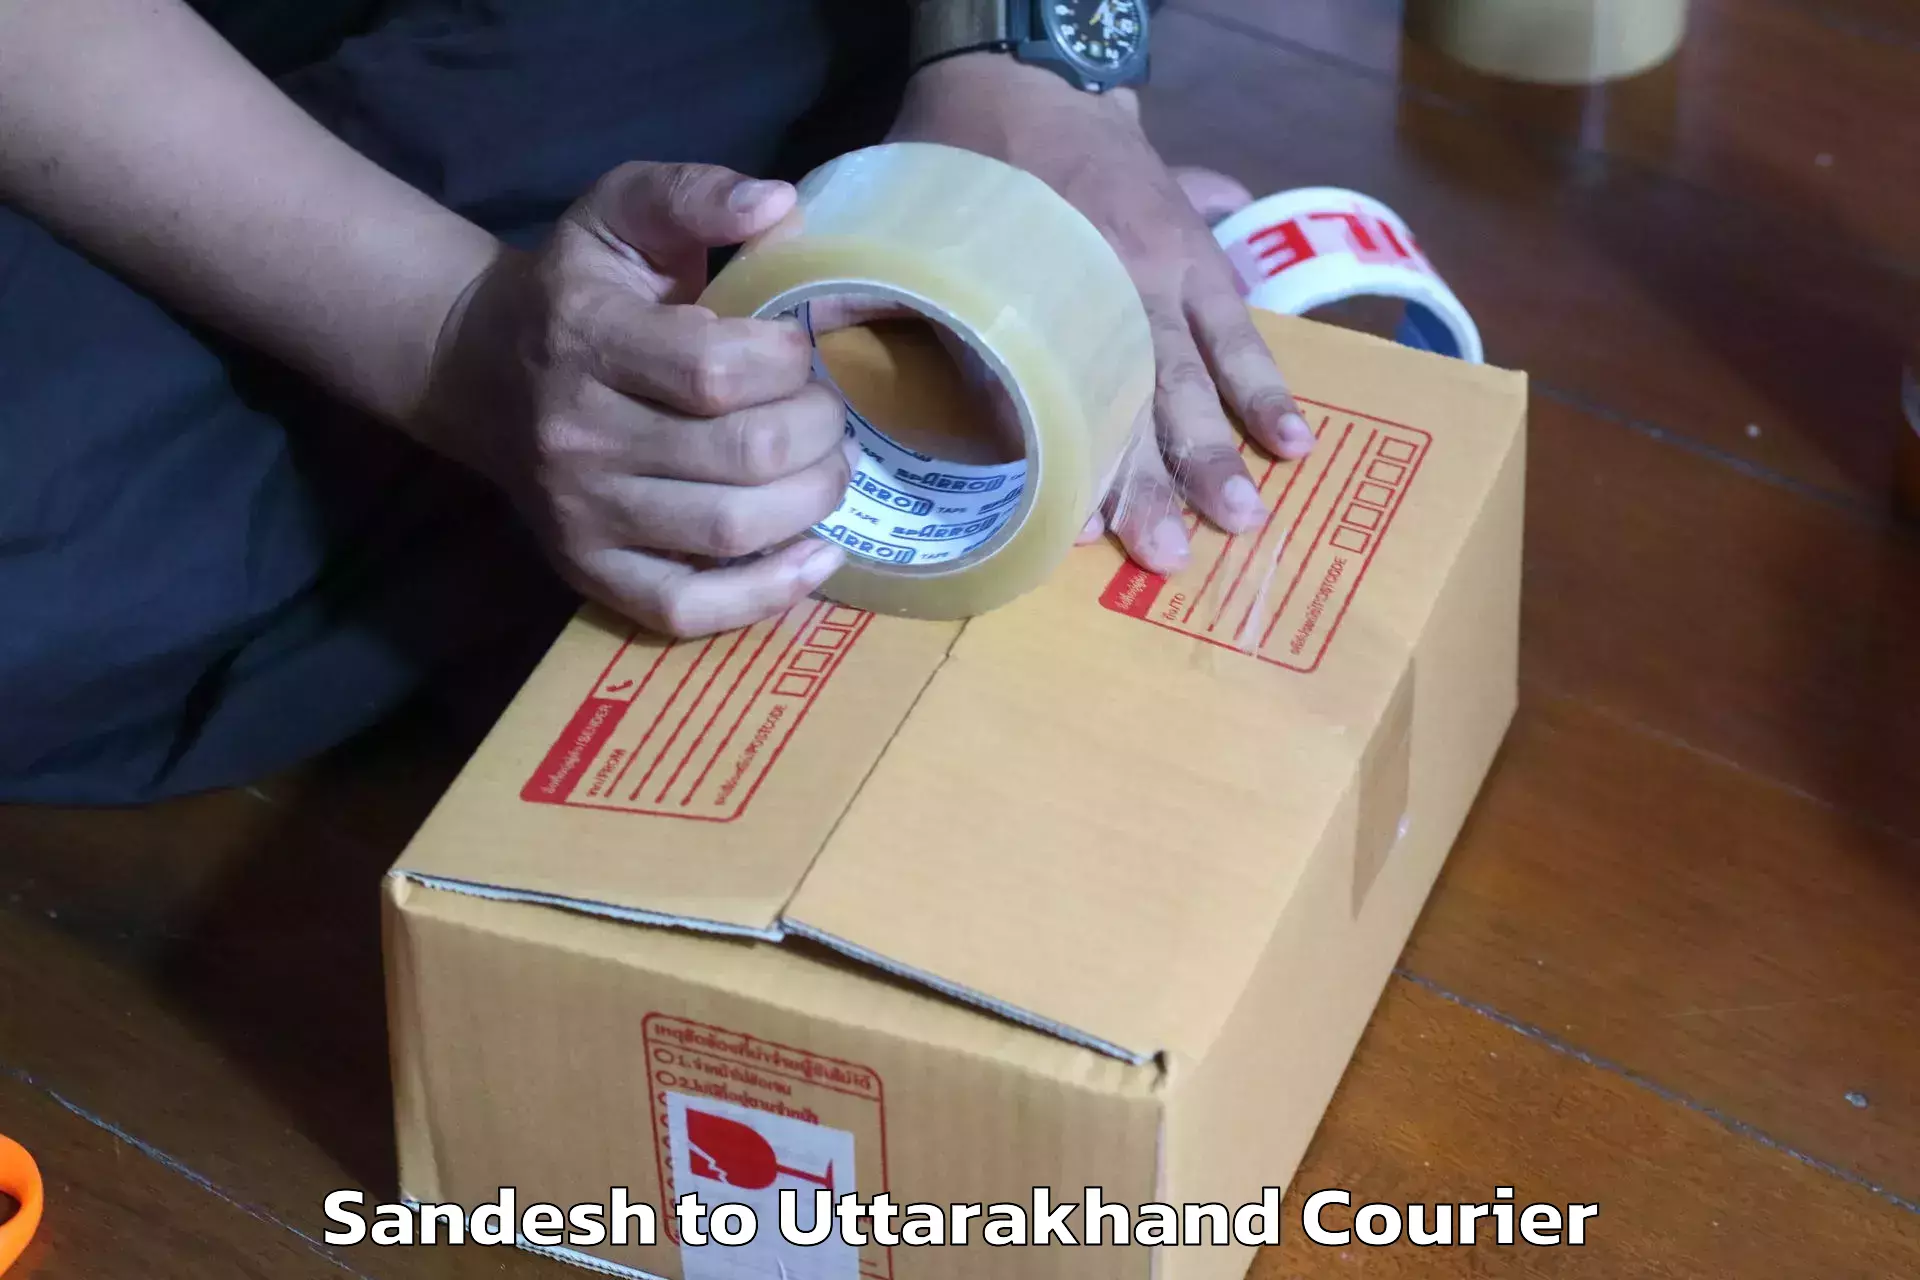 Furniture delivery service Sandesh to Bageshwar